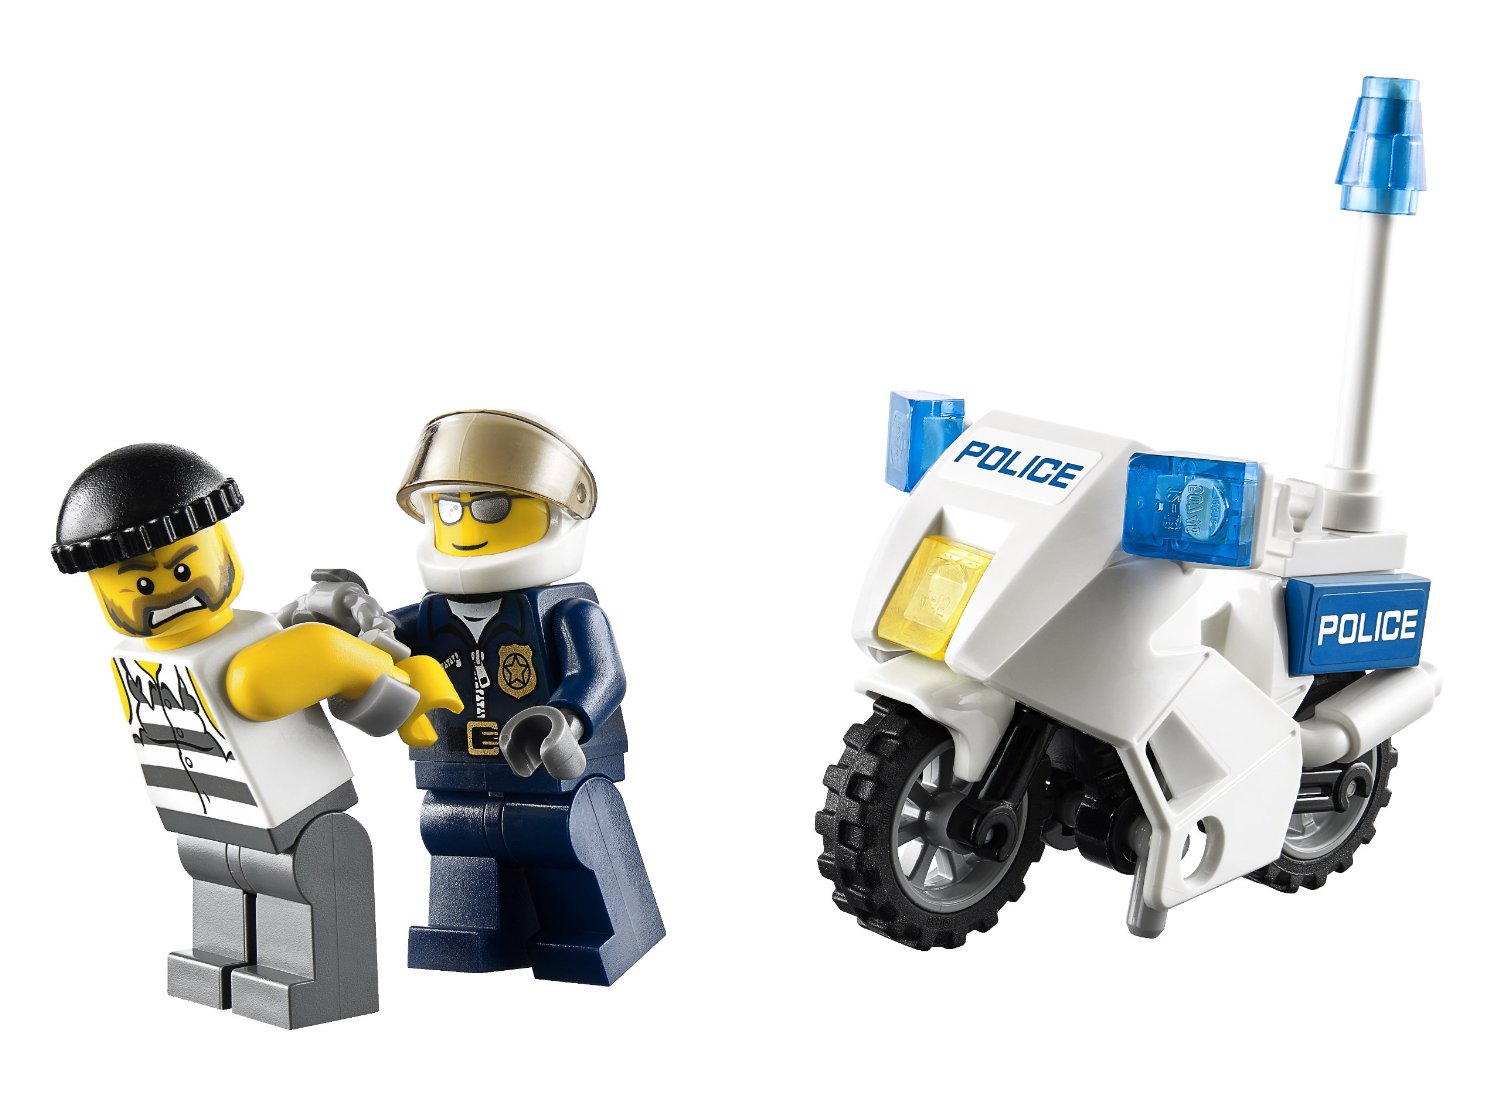 Policia de Lego City colocando las esposas a un detenido